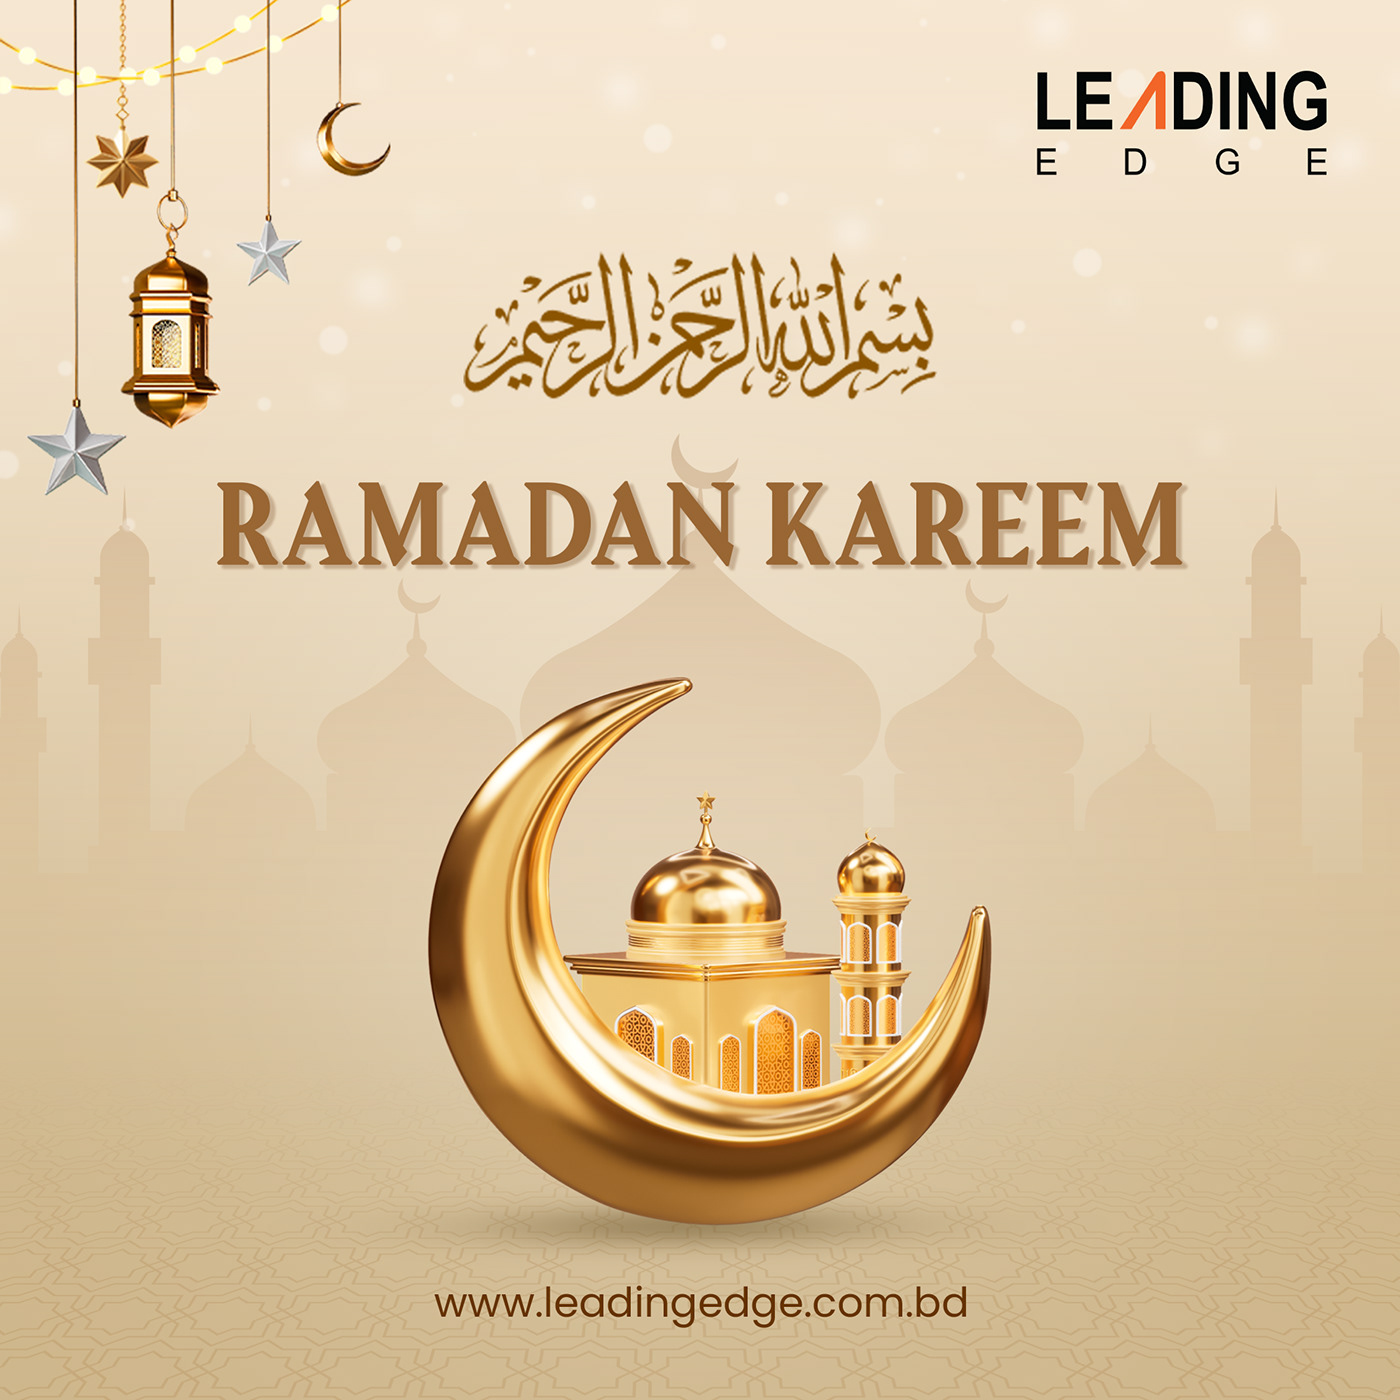 ramadan ramadan kareem Ramadan Mubarak ramadan design Mubarak islamic kareem arabic muslim